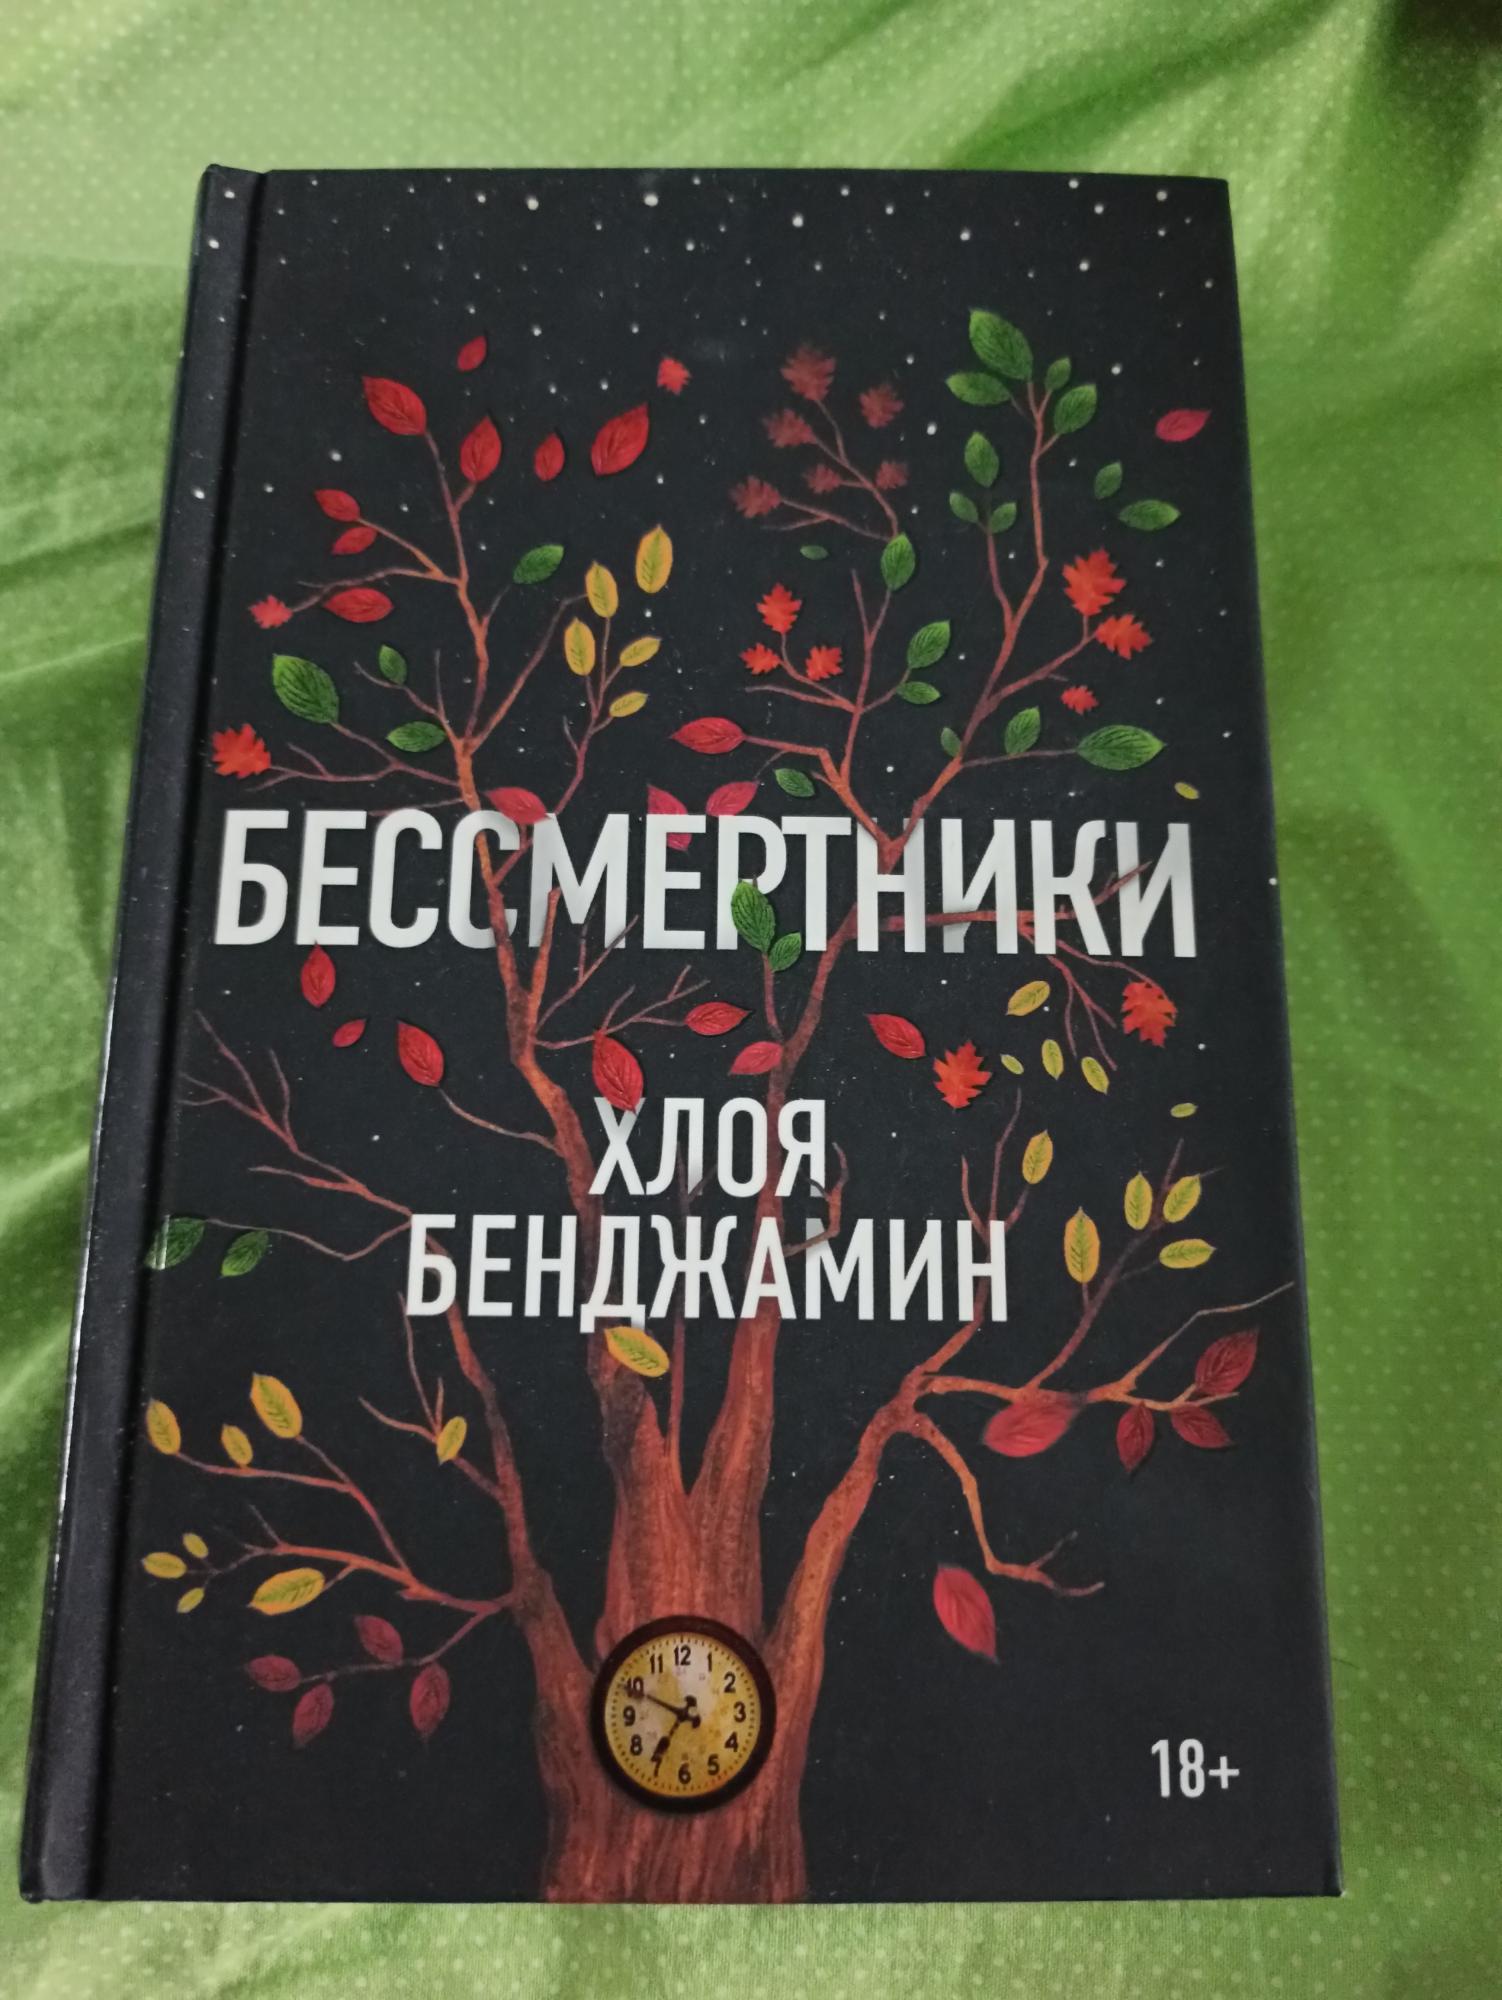 Книга ,Роман Хлоя Бенджамин (бессмертники) в Москве 89652133009 купить 1